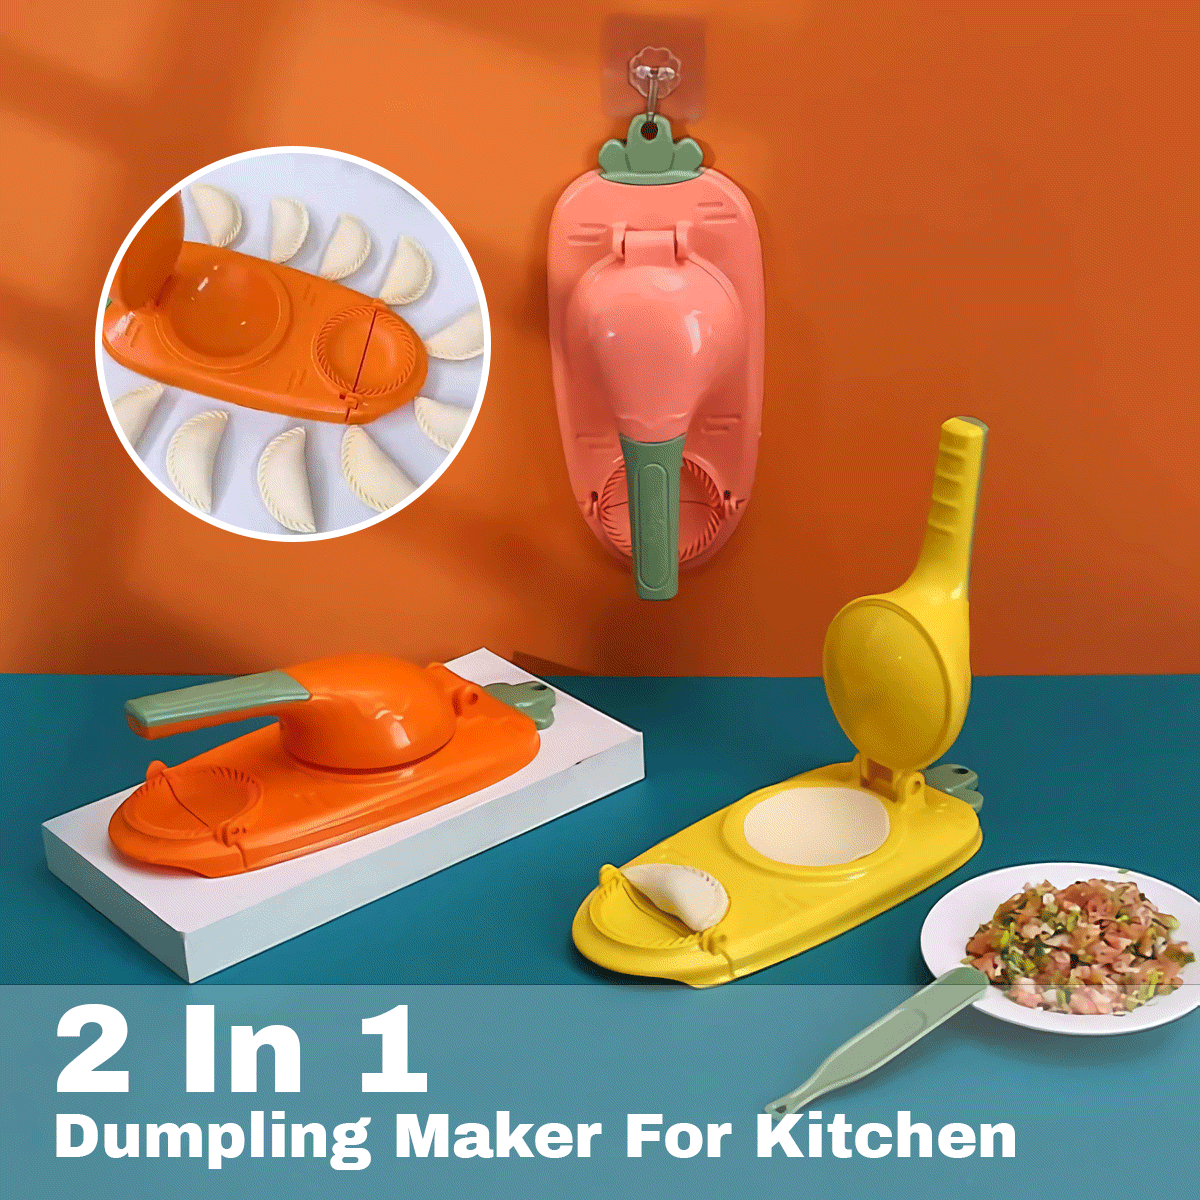 2 In 1 Dumpling Maker For Kitchen